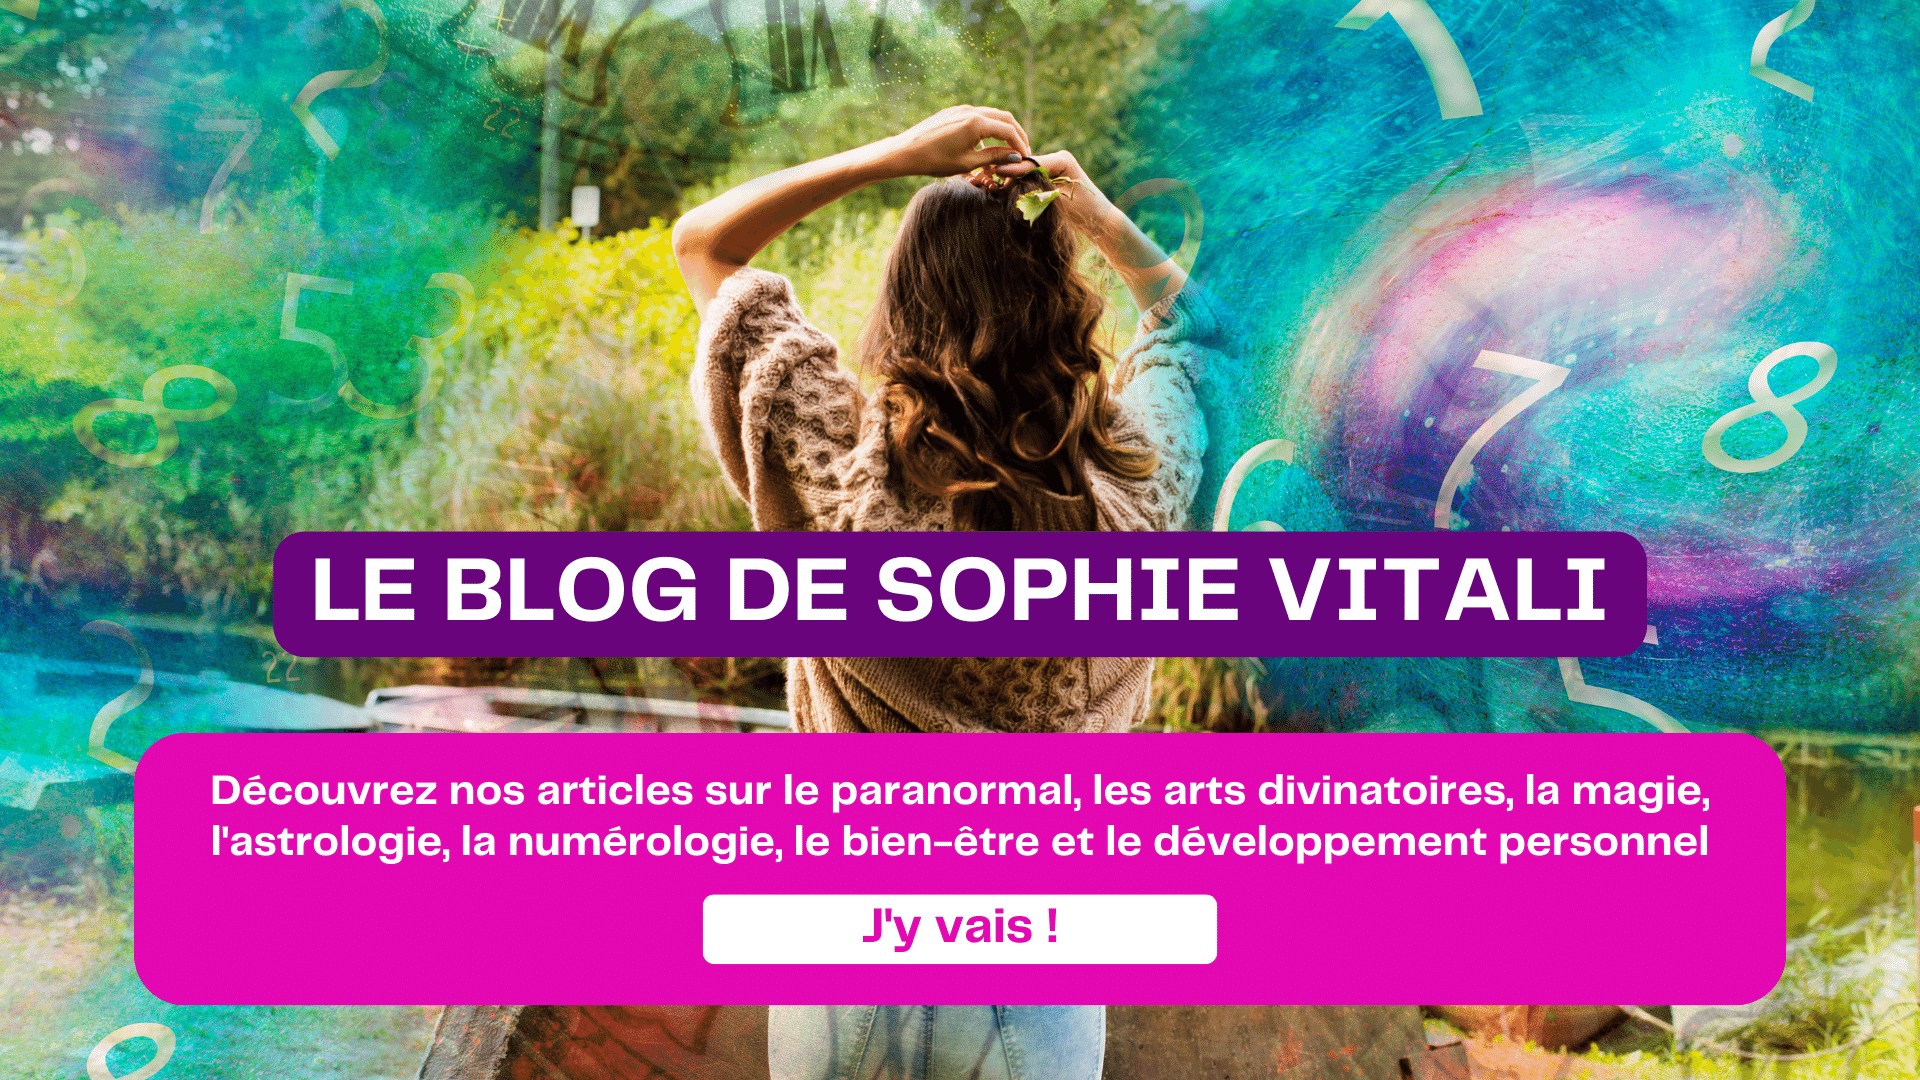 Le blog de voyance de Sophie Vitali : arts divinatoires, paranormal, bien-être, développement personnel, auteurs, livres, ésotérisme